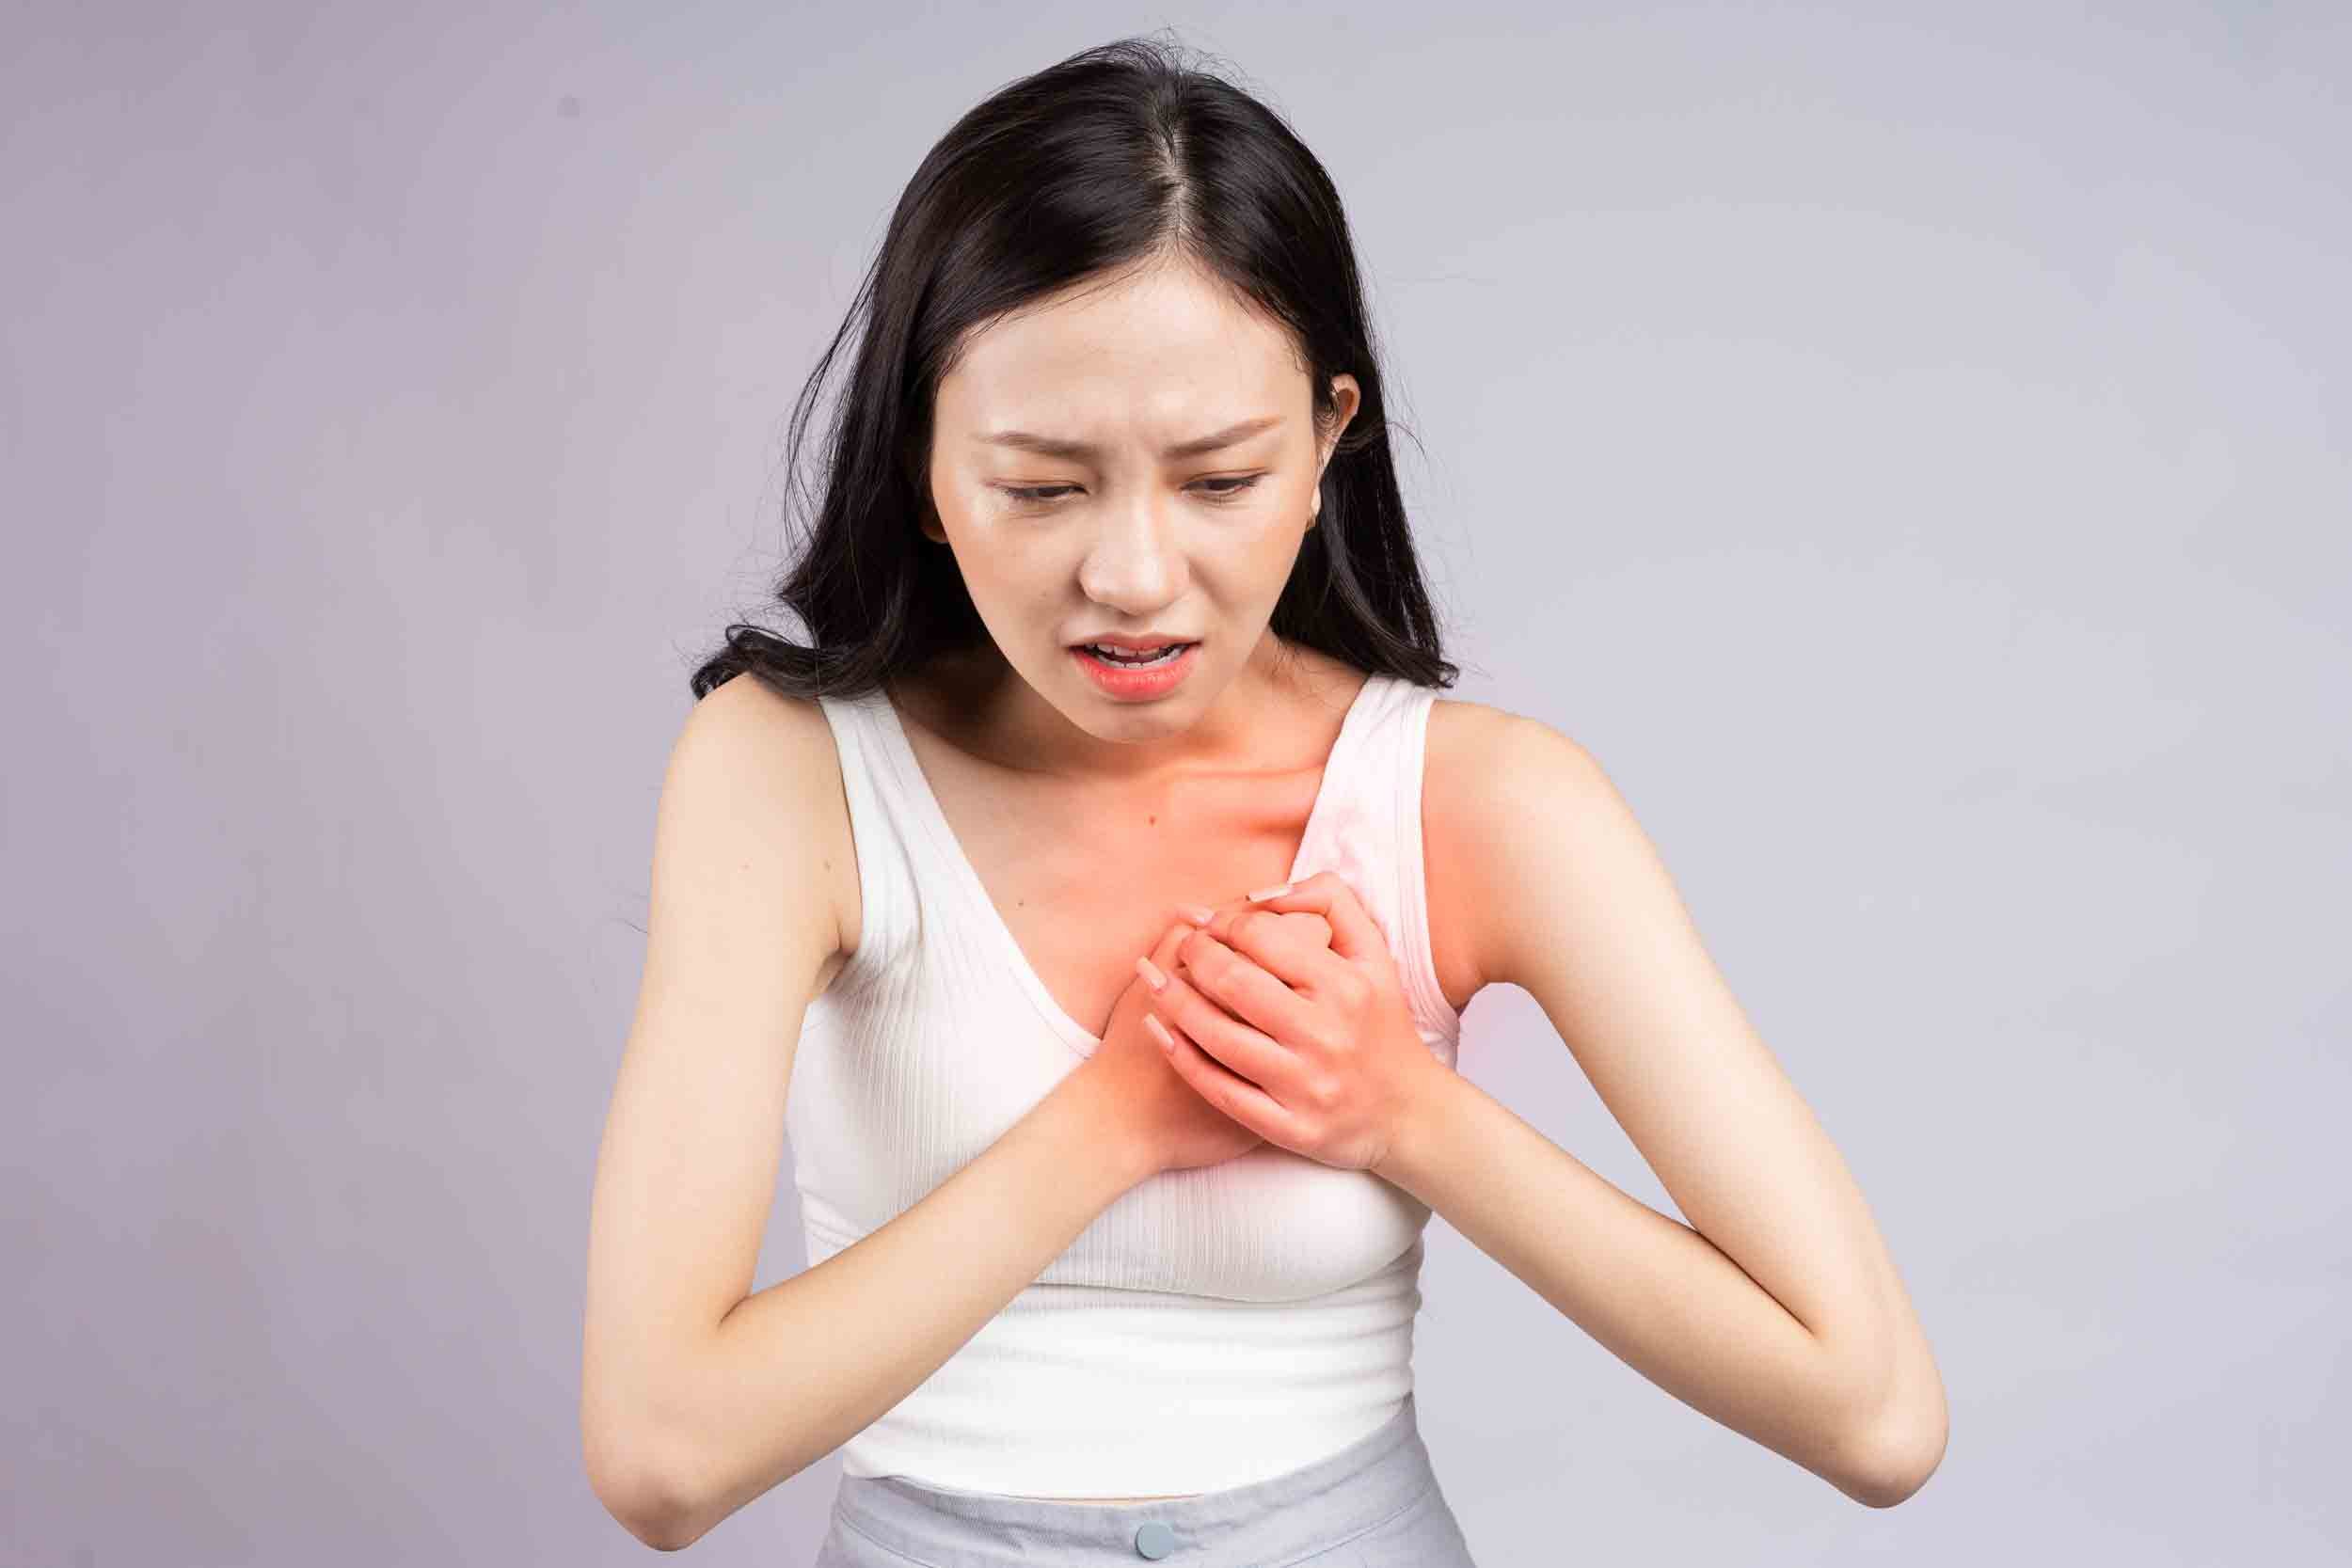 L’infarctus chez la femme ne présente parfois aucun symptôme